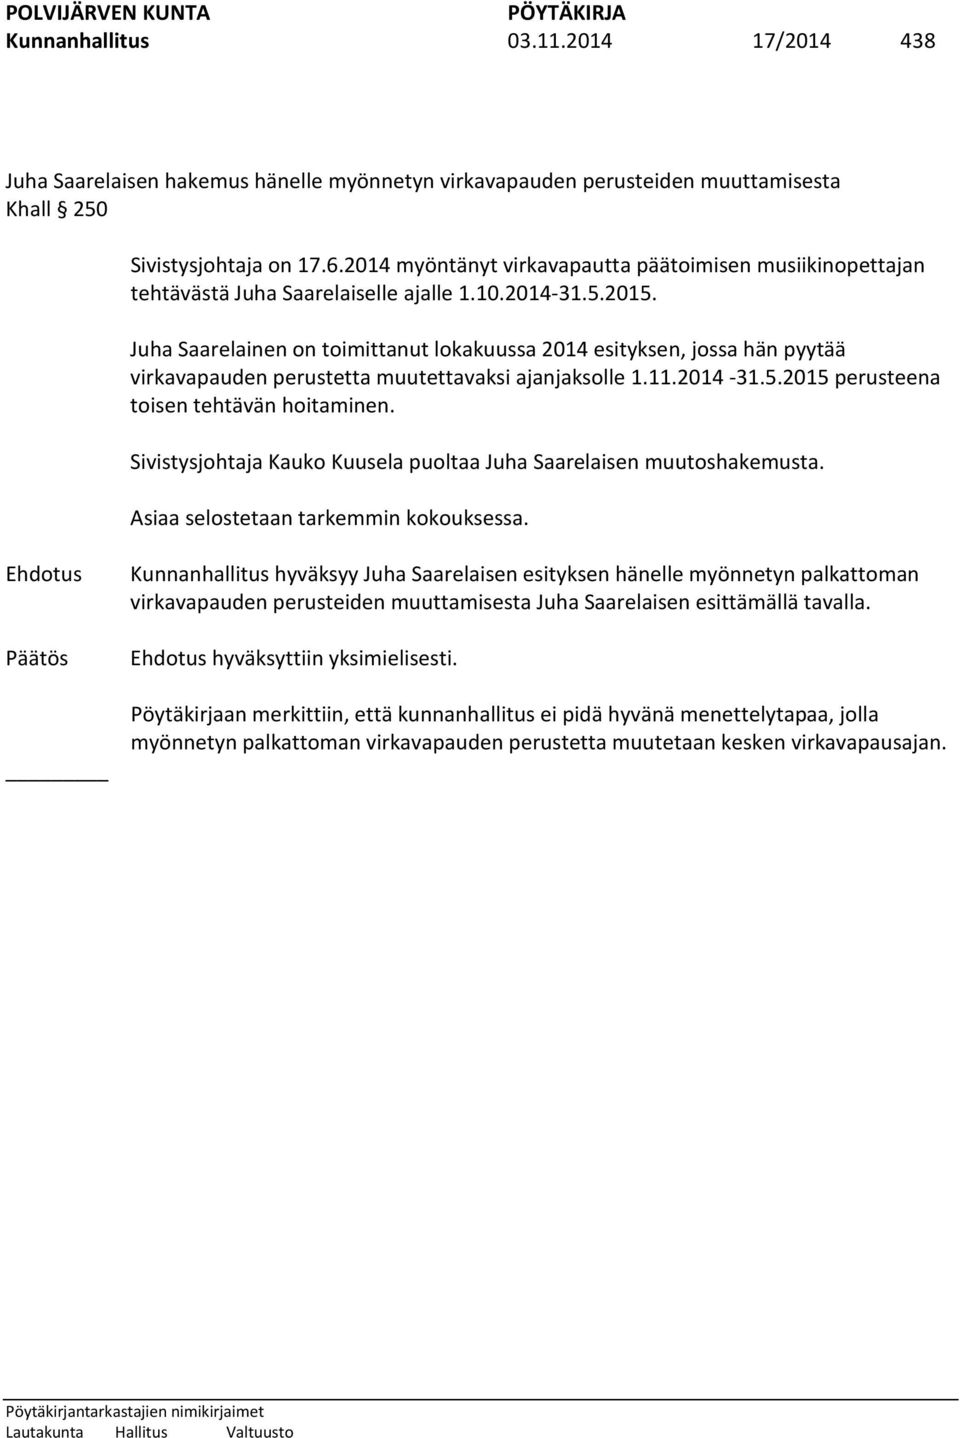 Juha Saarelainen on toimittanut lokakuussa 2014 esityksen, jossa hän pyytää virkavapauden perustetta muutettavaksi ajanjaksolle 1.11.2014-31.5.2015 perusteena toisen tehtävän hoitaminen.